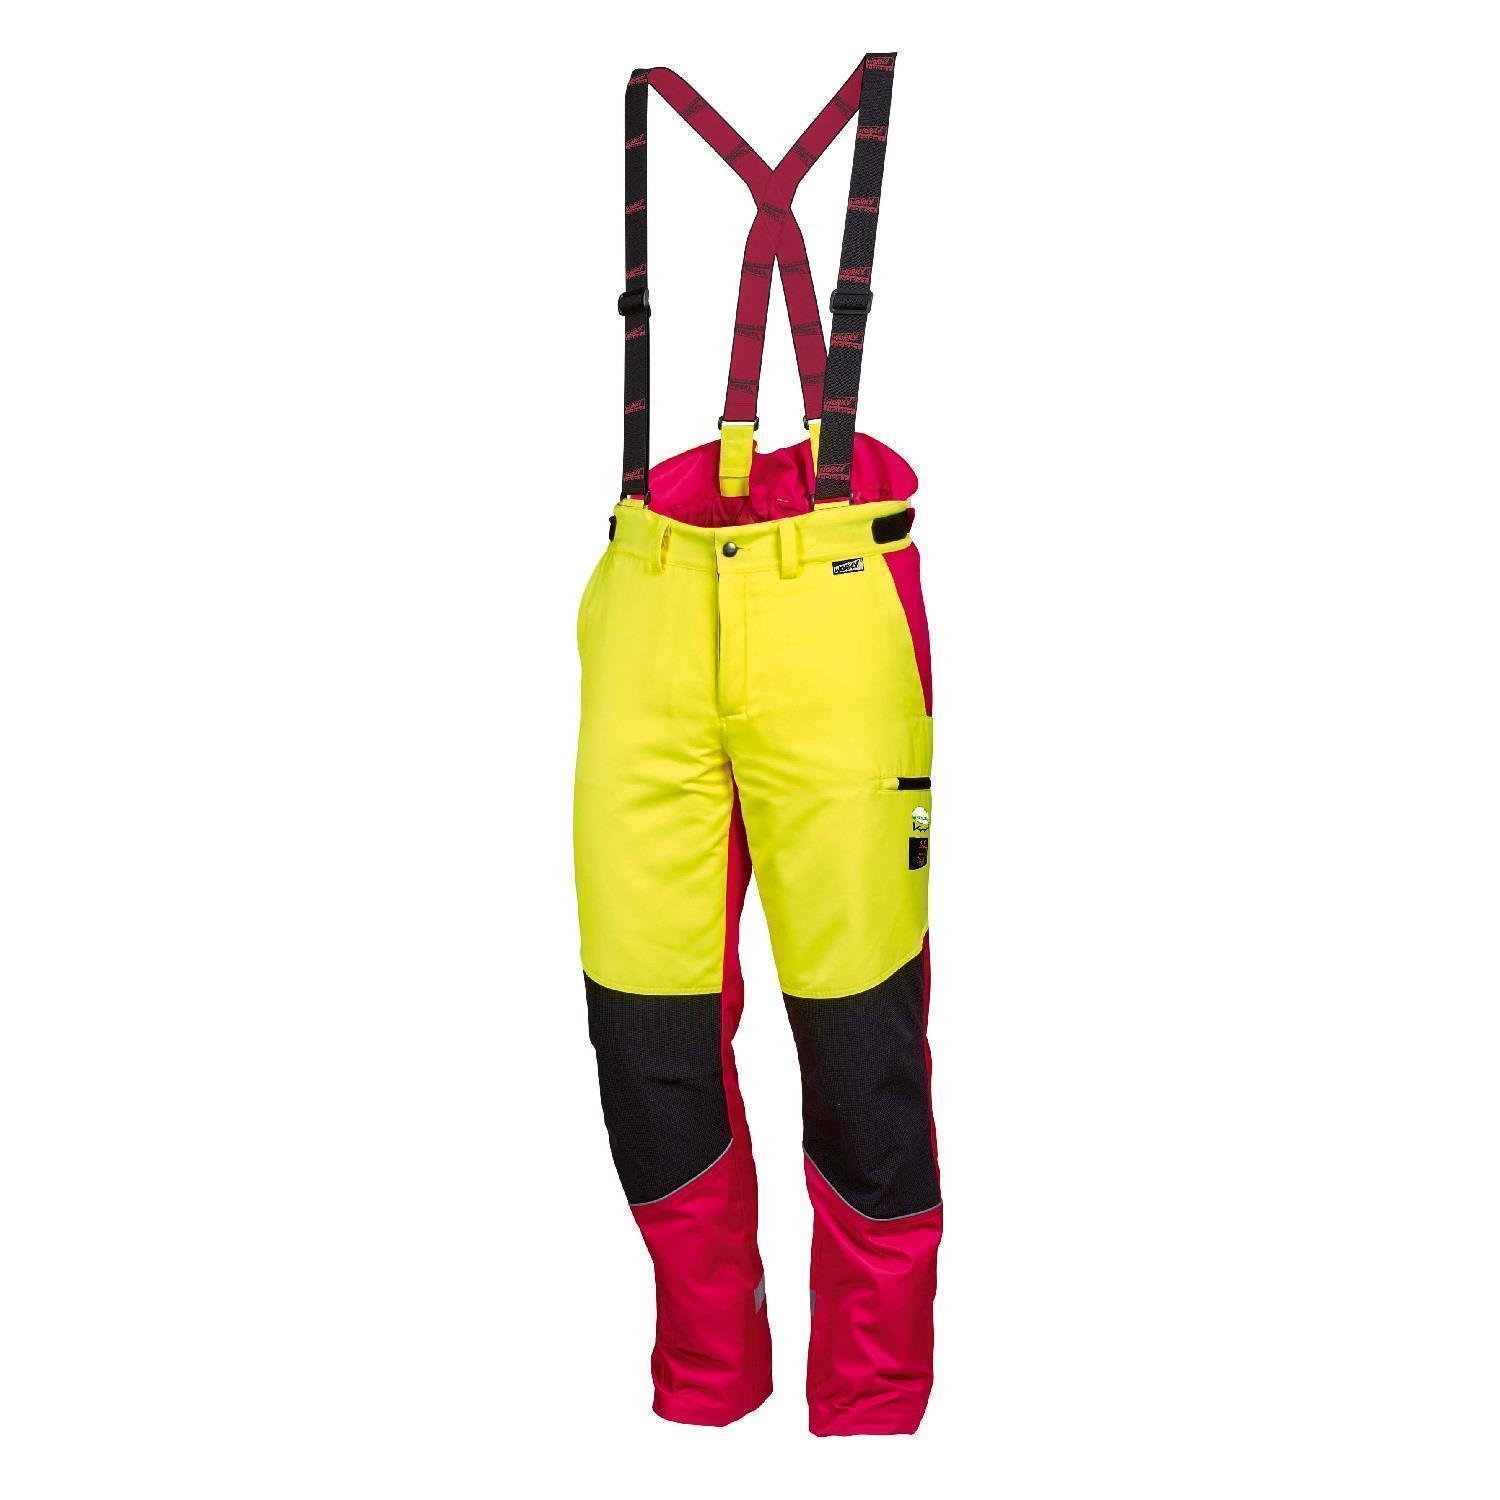 Forstschutz-Hose Komfort Größen: 48-62 (rot neongelb), Schnittschutzhosen, Schnittschutzkleidung, Bekleidung